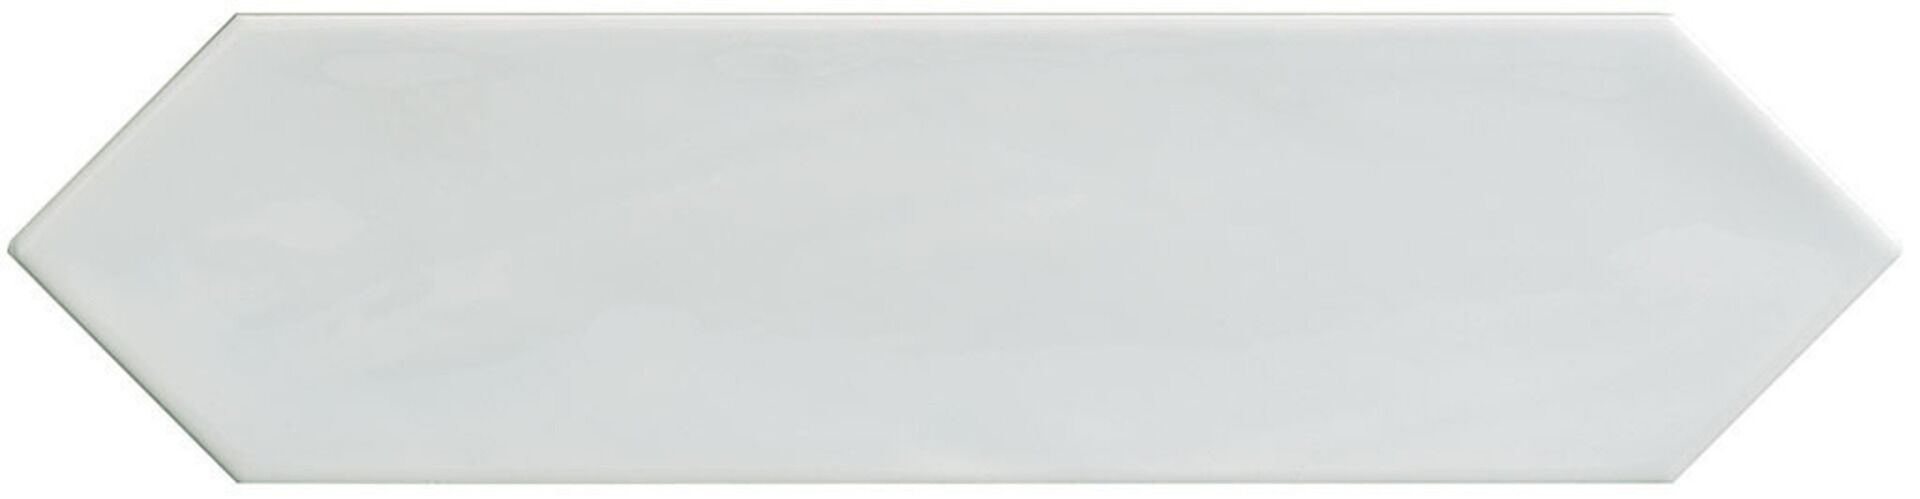 Керамическая плитка KANE PICKET WHITE 7,5*30 / коллекция KANE / производитель CIFRE CERAMICA / страна Испания